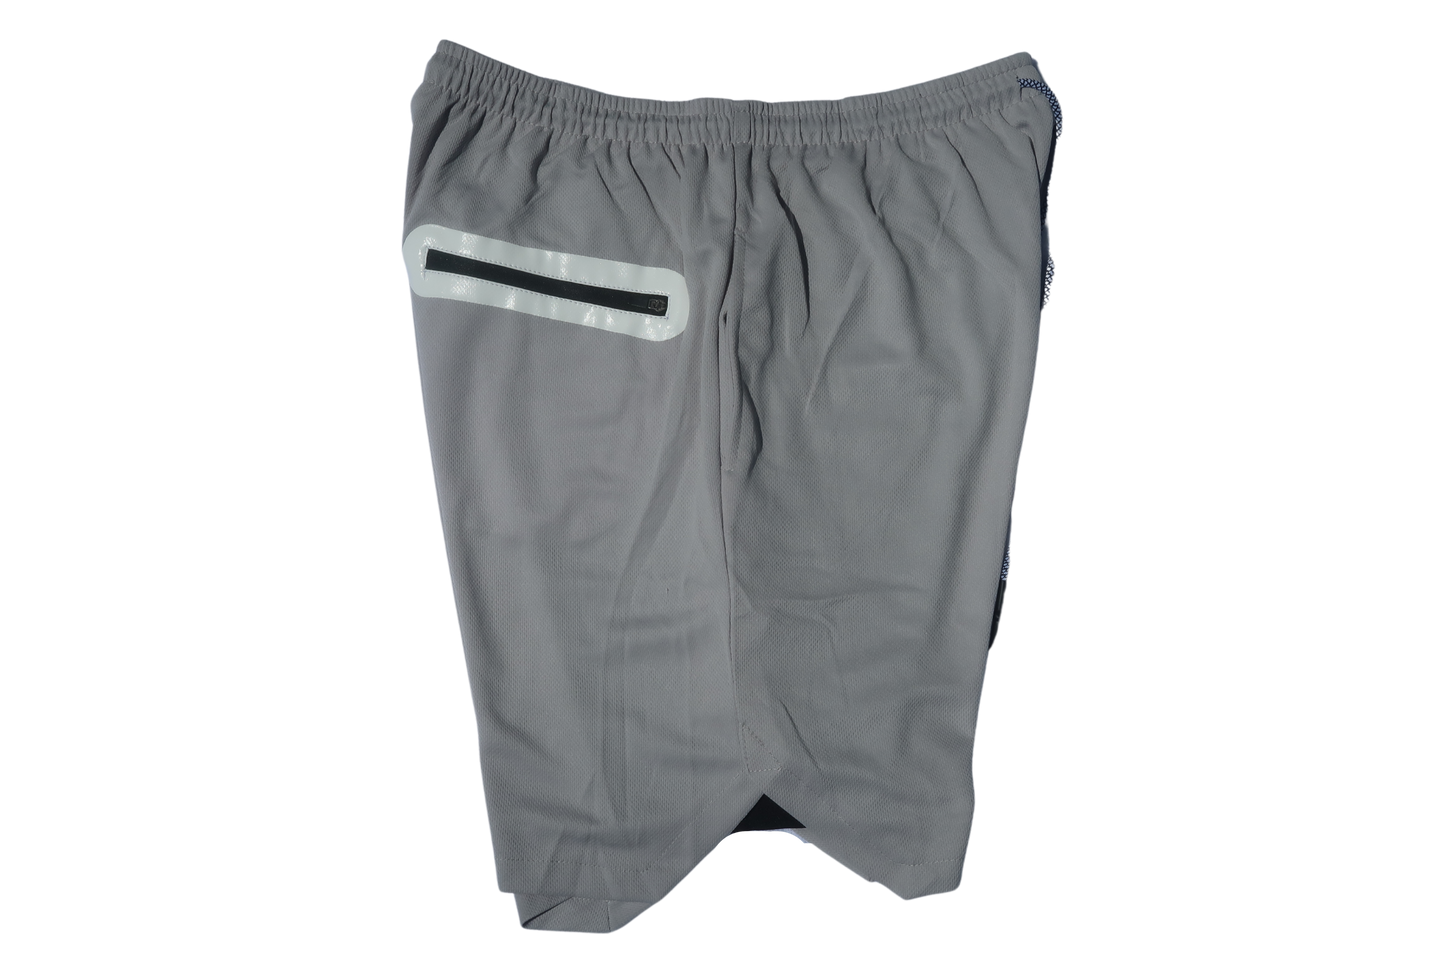 The Tuphor 7” Training Shorts